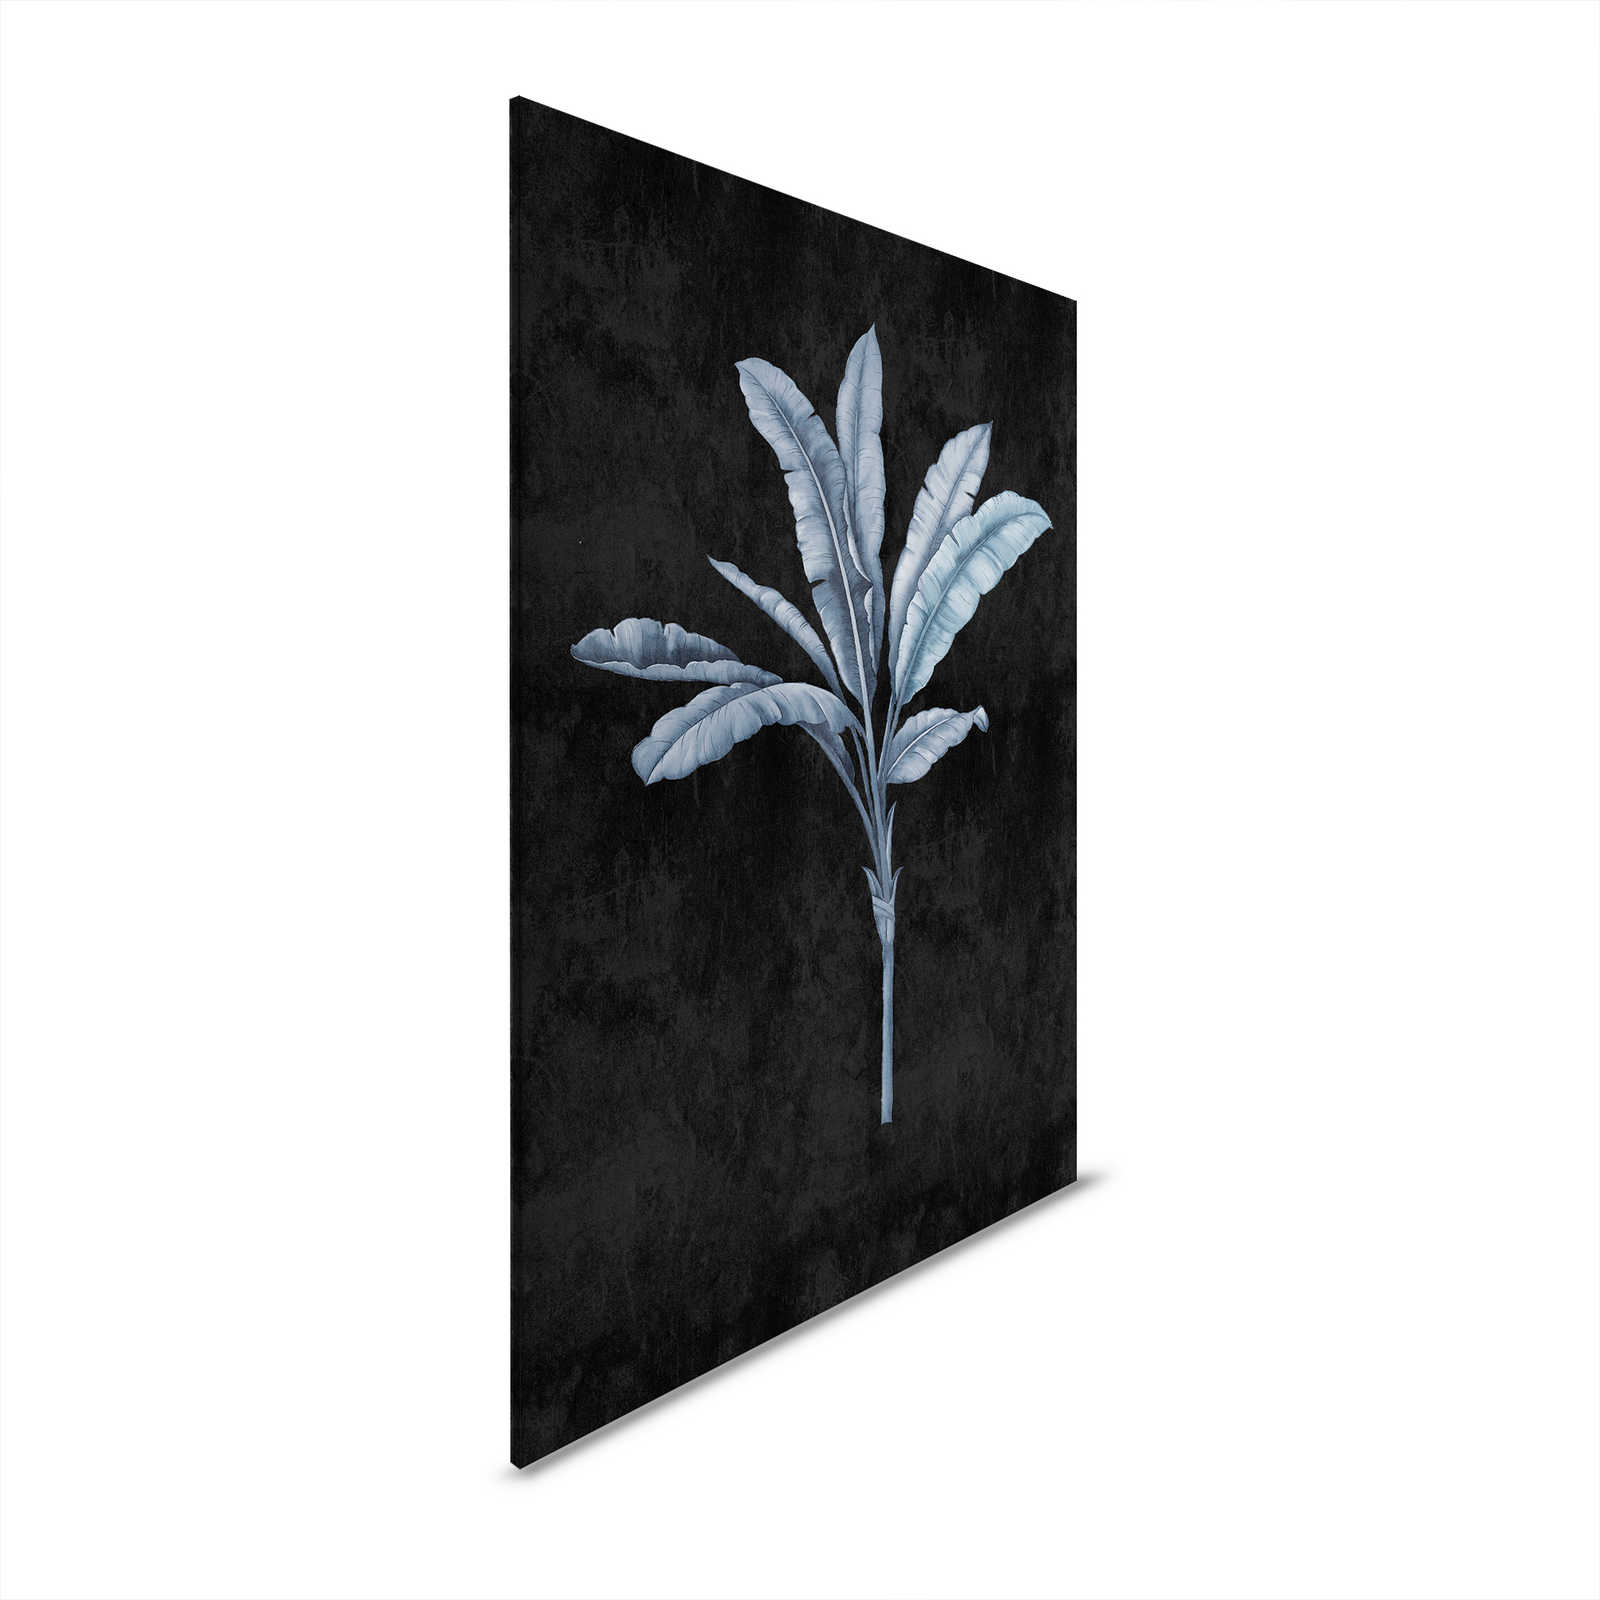 Fiji 2 - Canvas schilderij Zwart met Blauwgrijs Palmmotief - 0.80 m x 1.20 m
